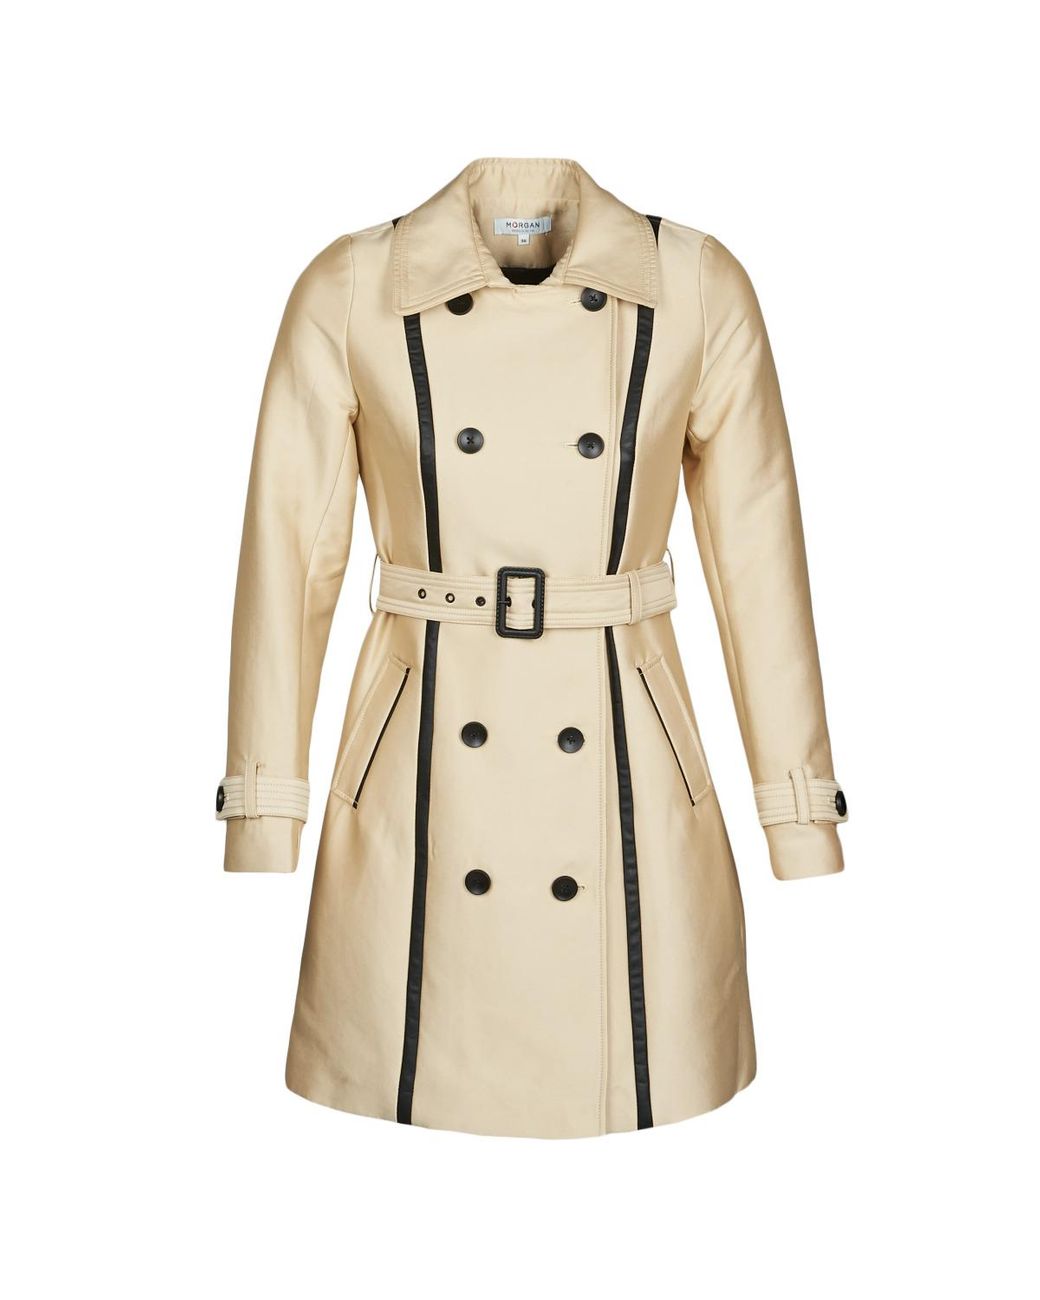 Pardessus Synthétique Rrd en coloris Neutre Femme Vêtements Manteaux Imperméables et trench coats 